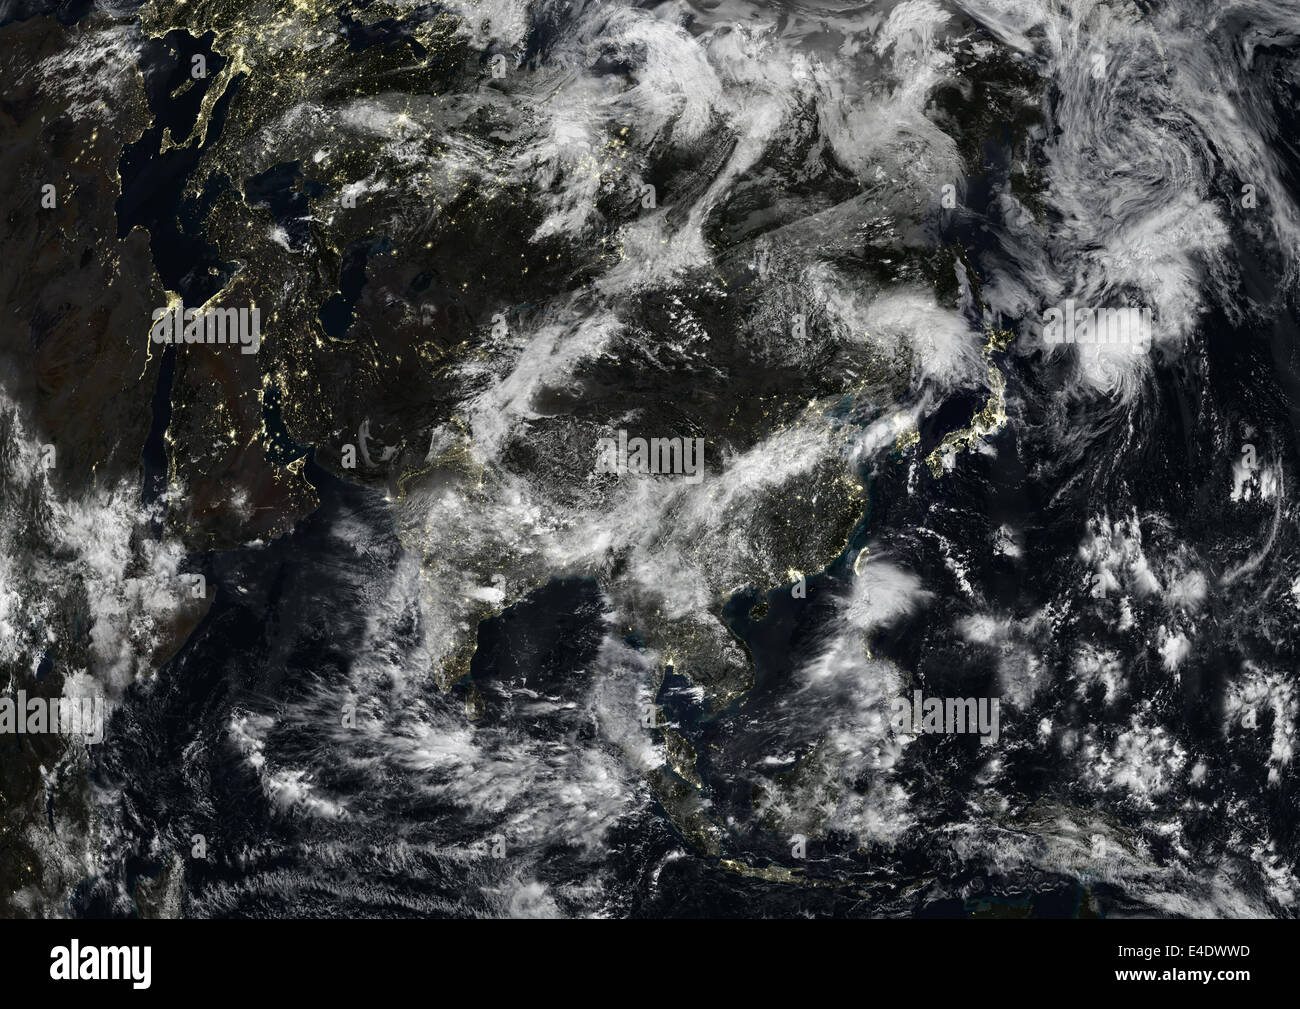 Asie pendant la nuit avec une couverture nuageuse, True Color Image satellite. La couleur vraie image satellite d'Asie pendant la nuit avec une couverture nuageuse Banque D'Images